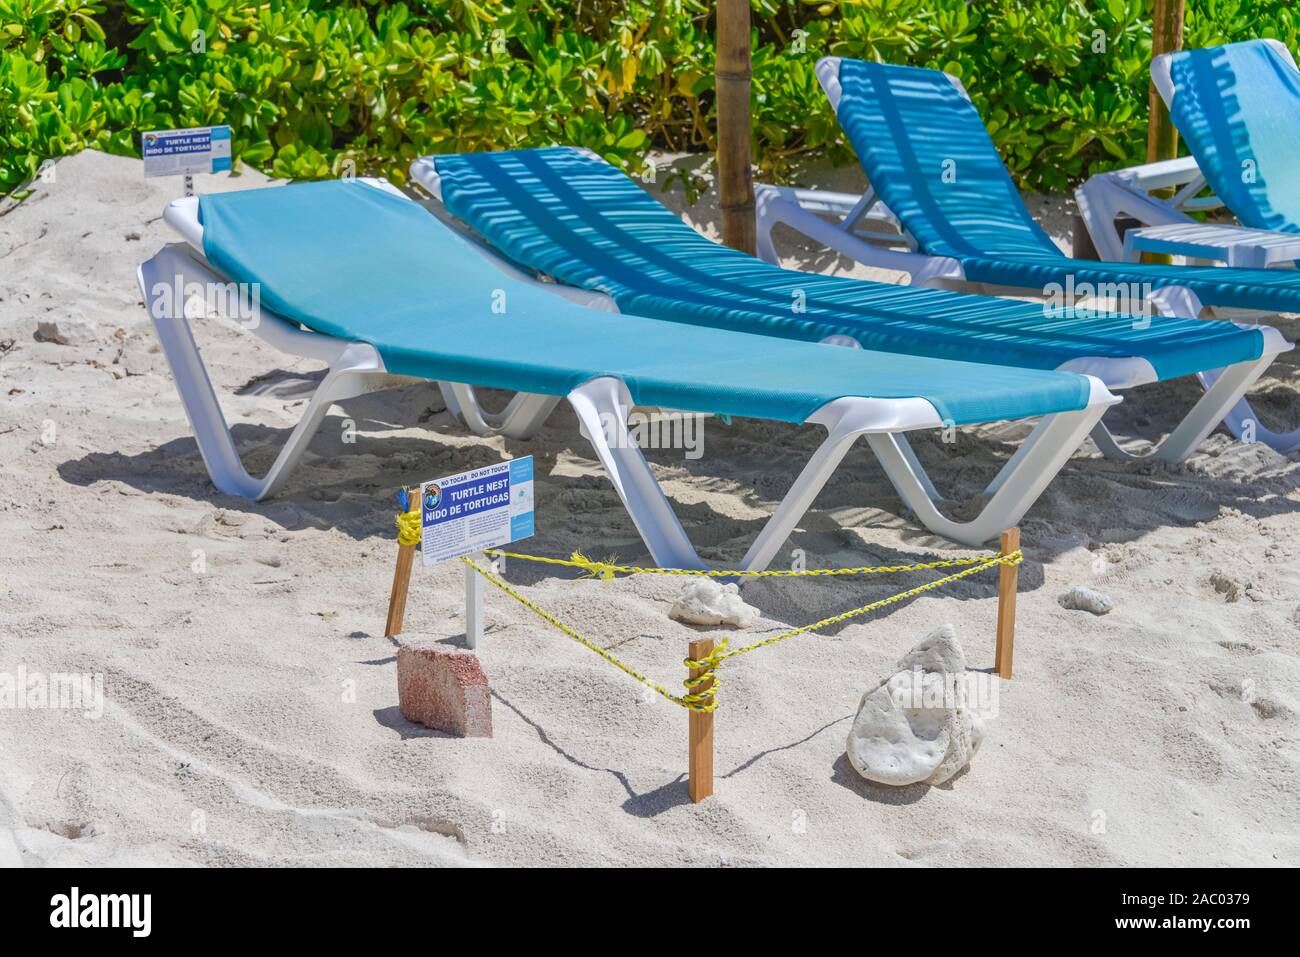 Schilder, Gelege Meeresschildkröten, Strand, Akumal, Quintana Roo, Mexiko Stock Photo